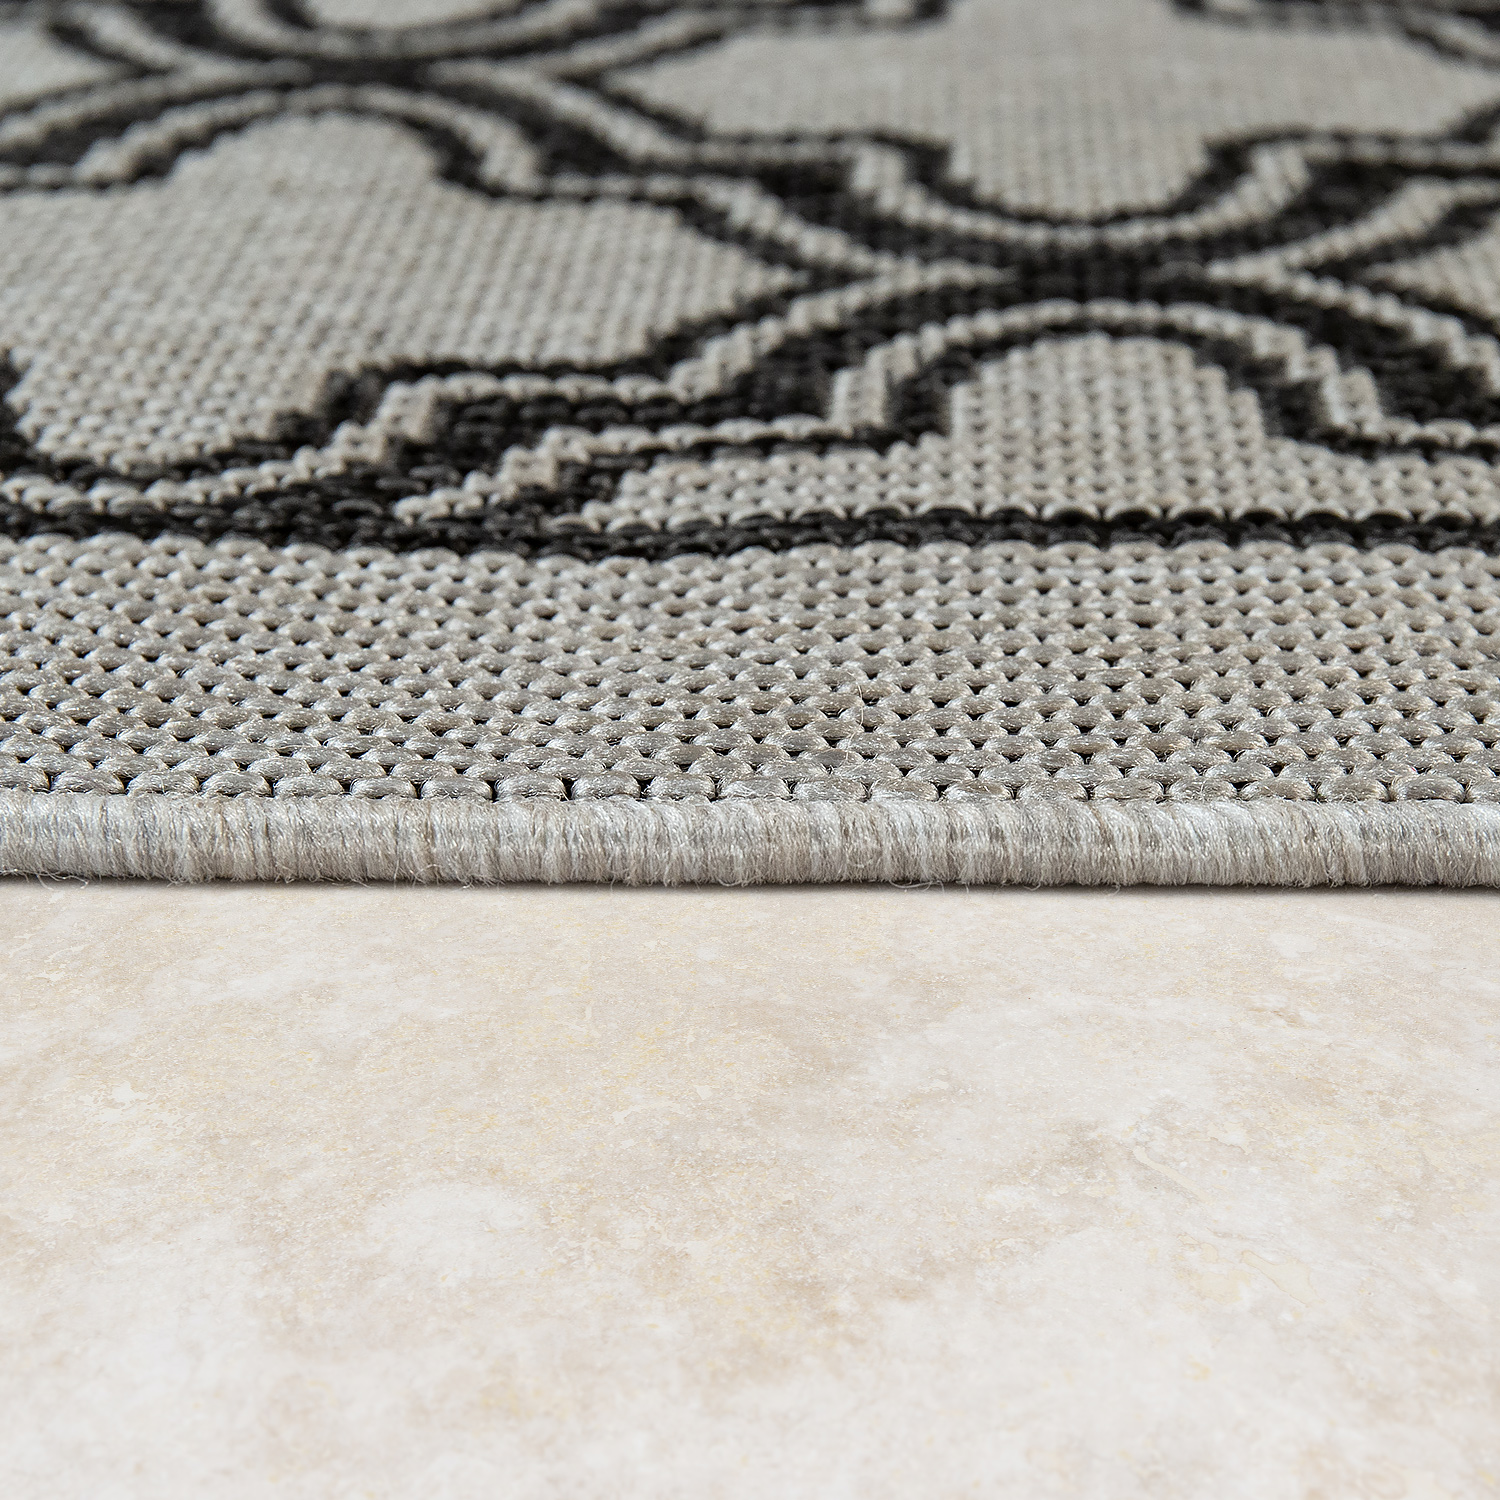 Orient Teppich Outdoor Marokkanisches Muster Grau 